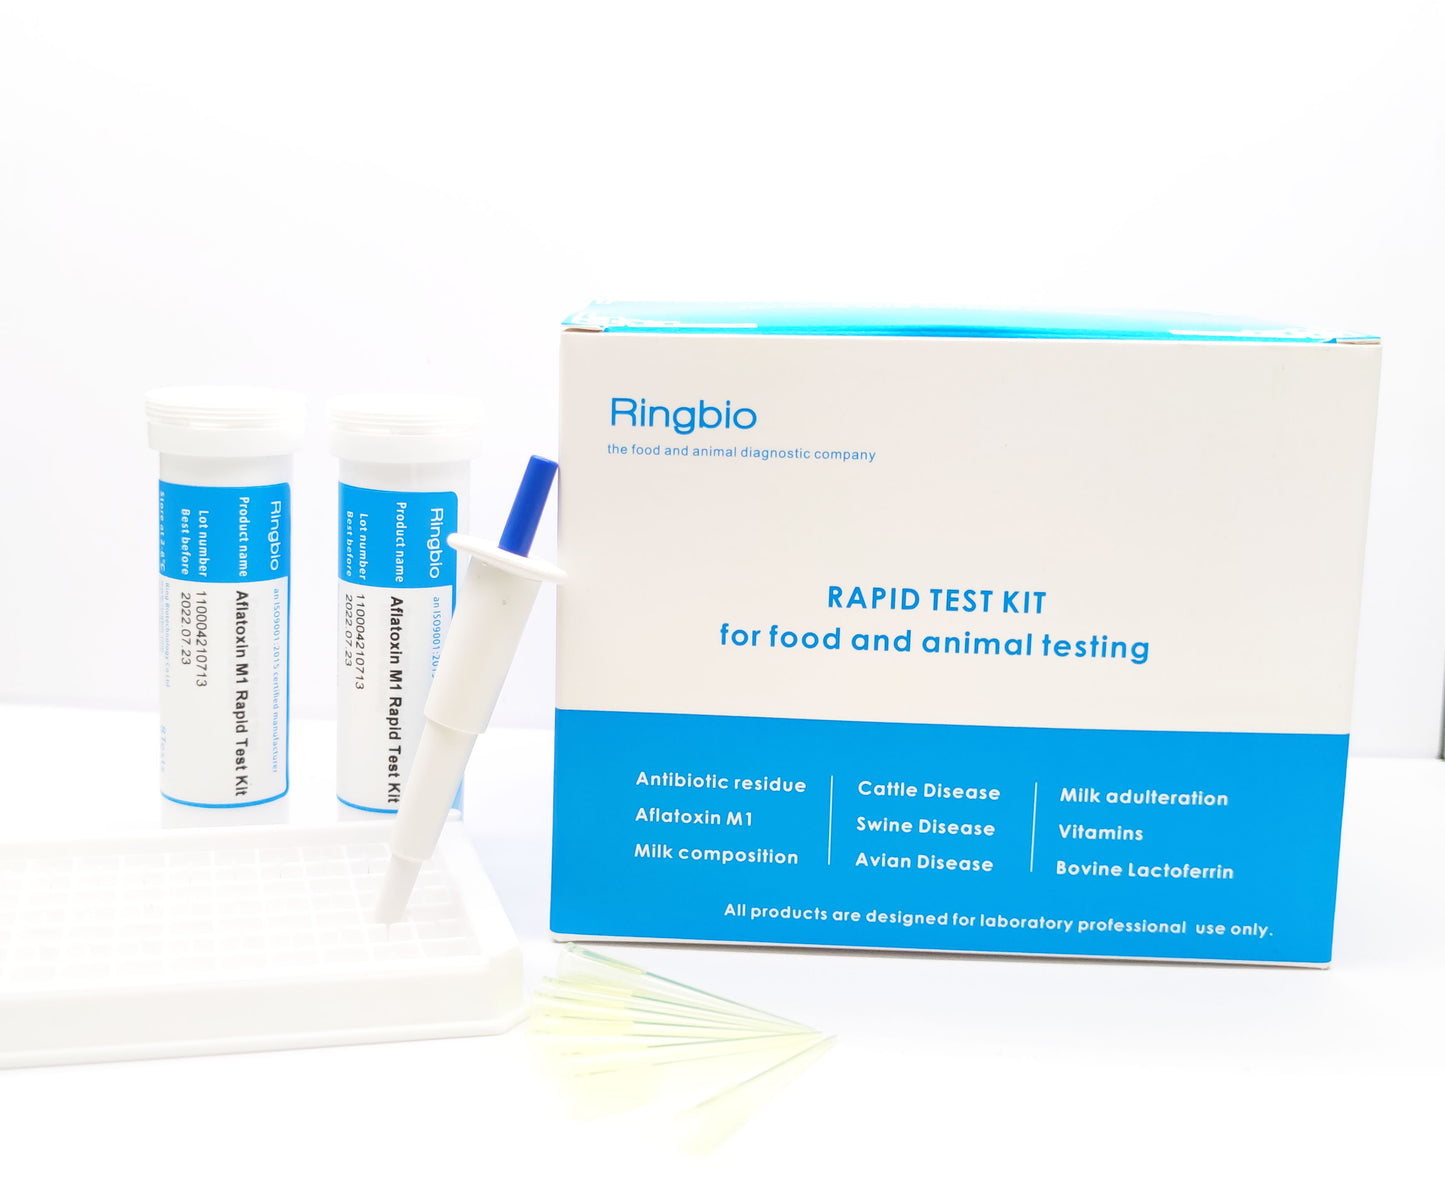 DPF (Dexamethasone / Prednisolone / Flunixin) Combo Test Kit